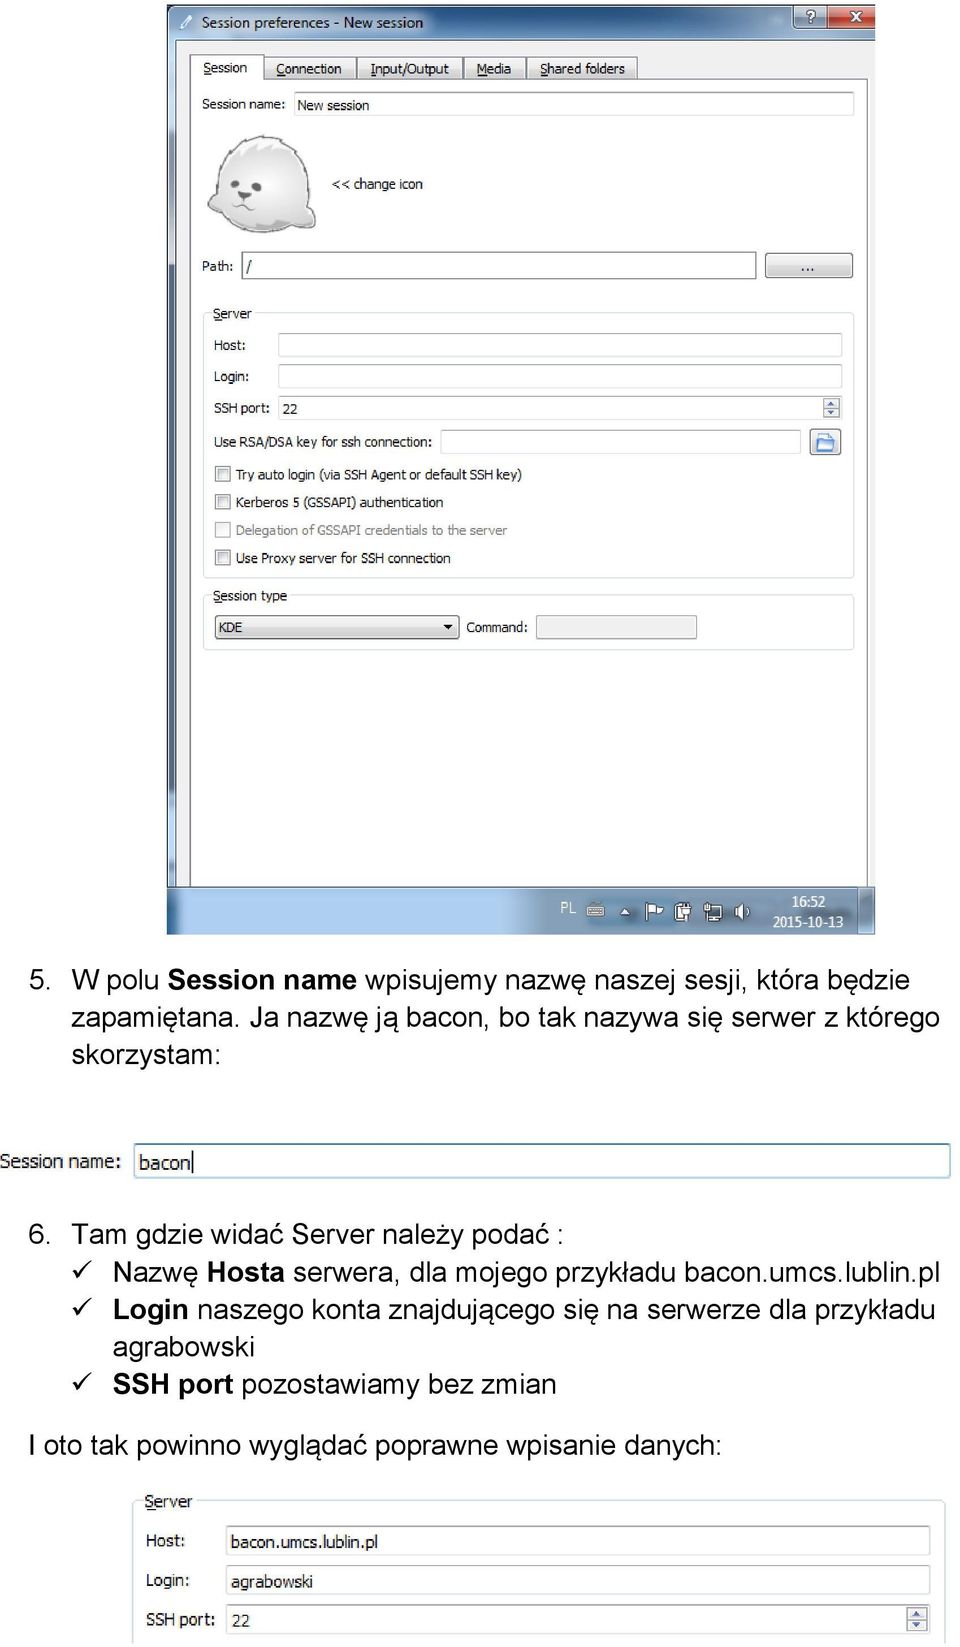 Tam gdzie widać Server należy podać : Nazwę Hosta serwera, dla mojego przykładu bacon.umcs.lublin.